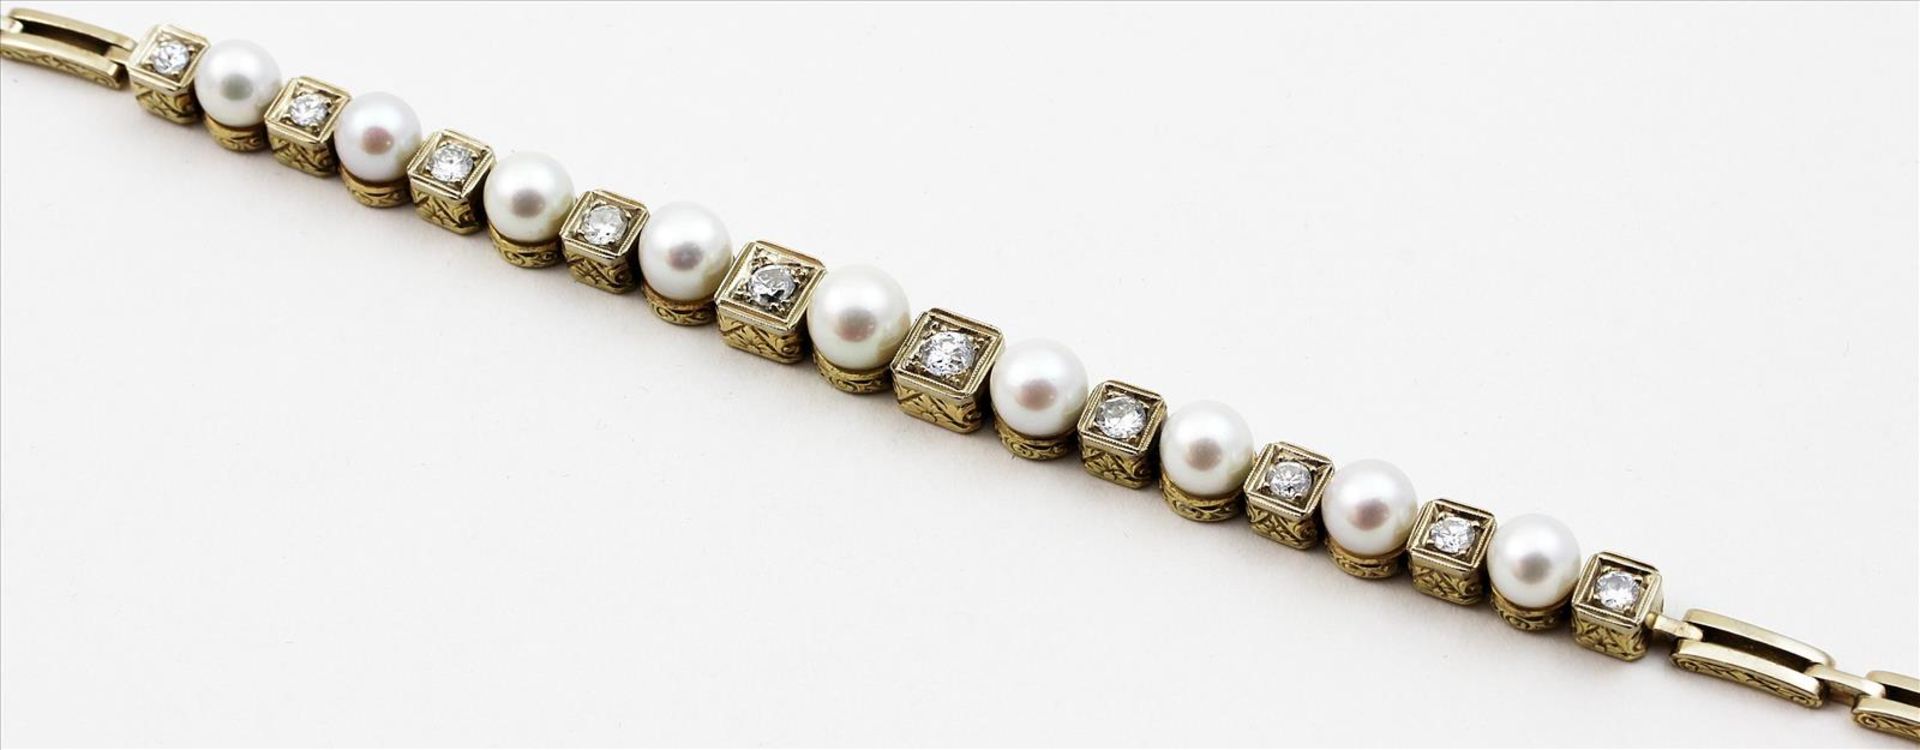 Art Deco-Damenarmband.585/000 GG, brutto 24,2 g. Seitlich ziselierte Glieder, abwechselnd besetzt